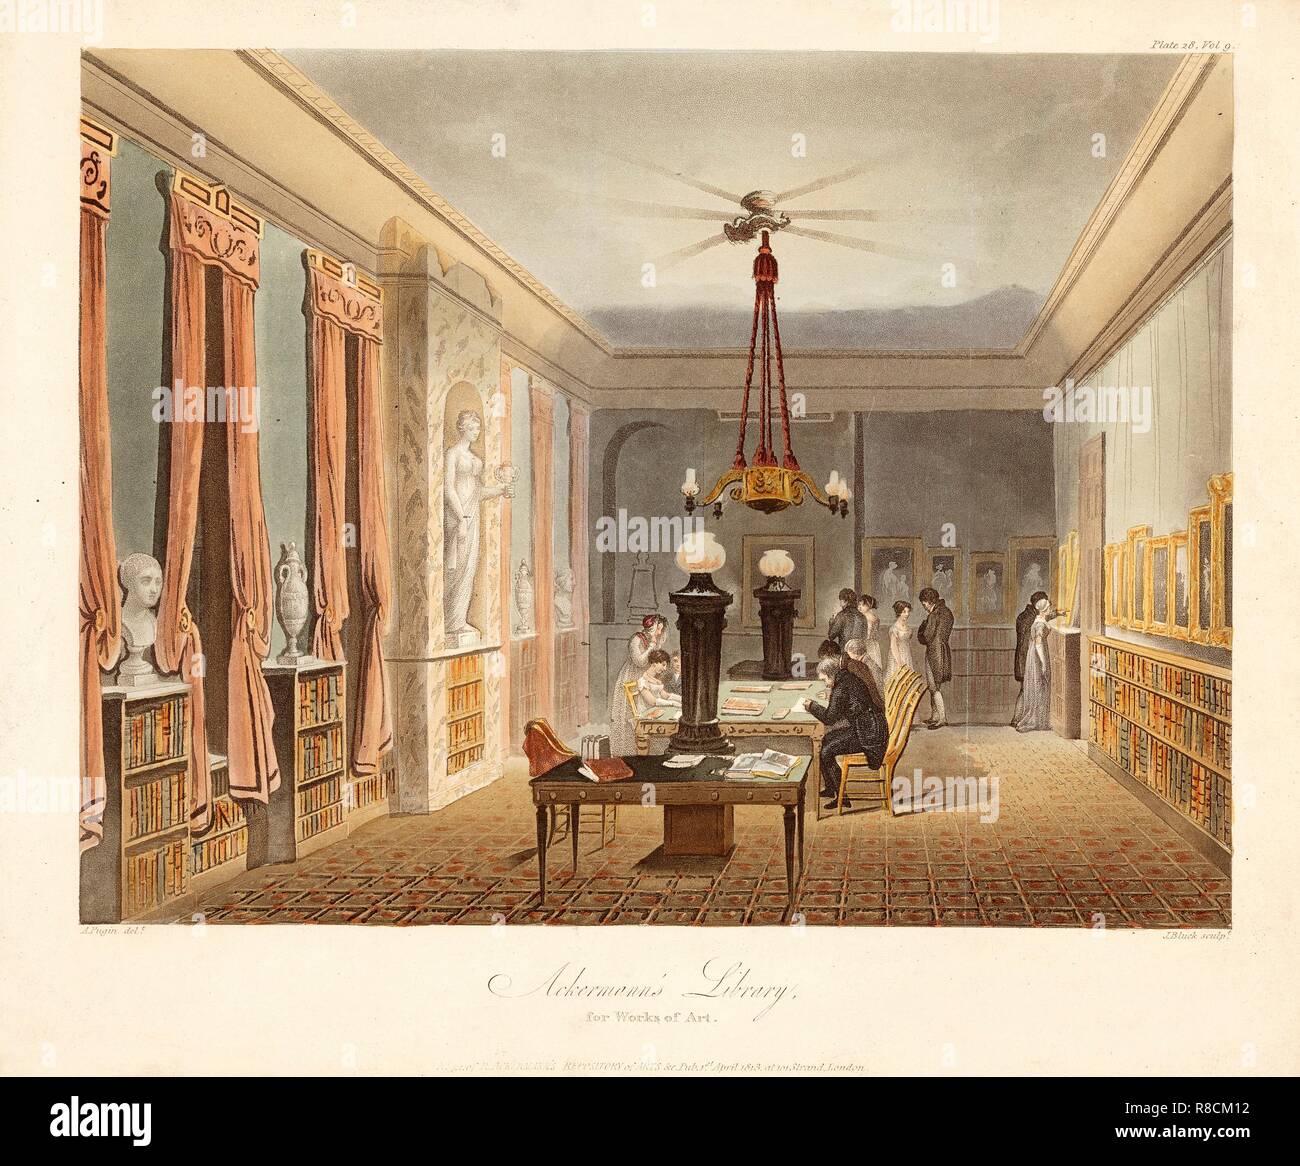 Ackermann's Library für Werke der Kunst, Pub. 1815. Schöpfer: Charles Augustus Pugin (1762 - 1832) nach. Stockfoto